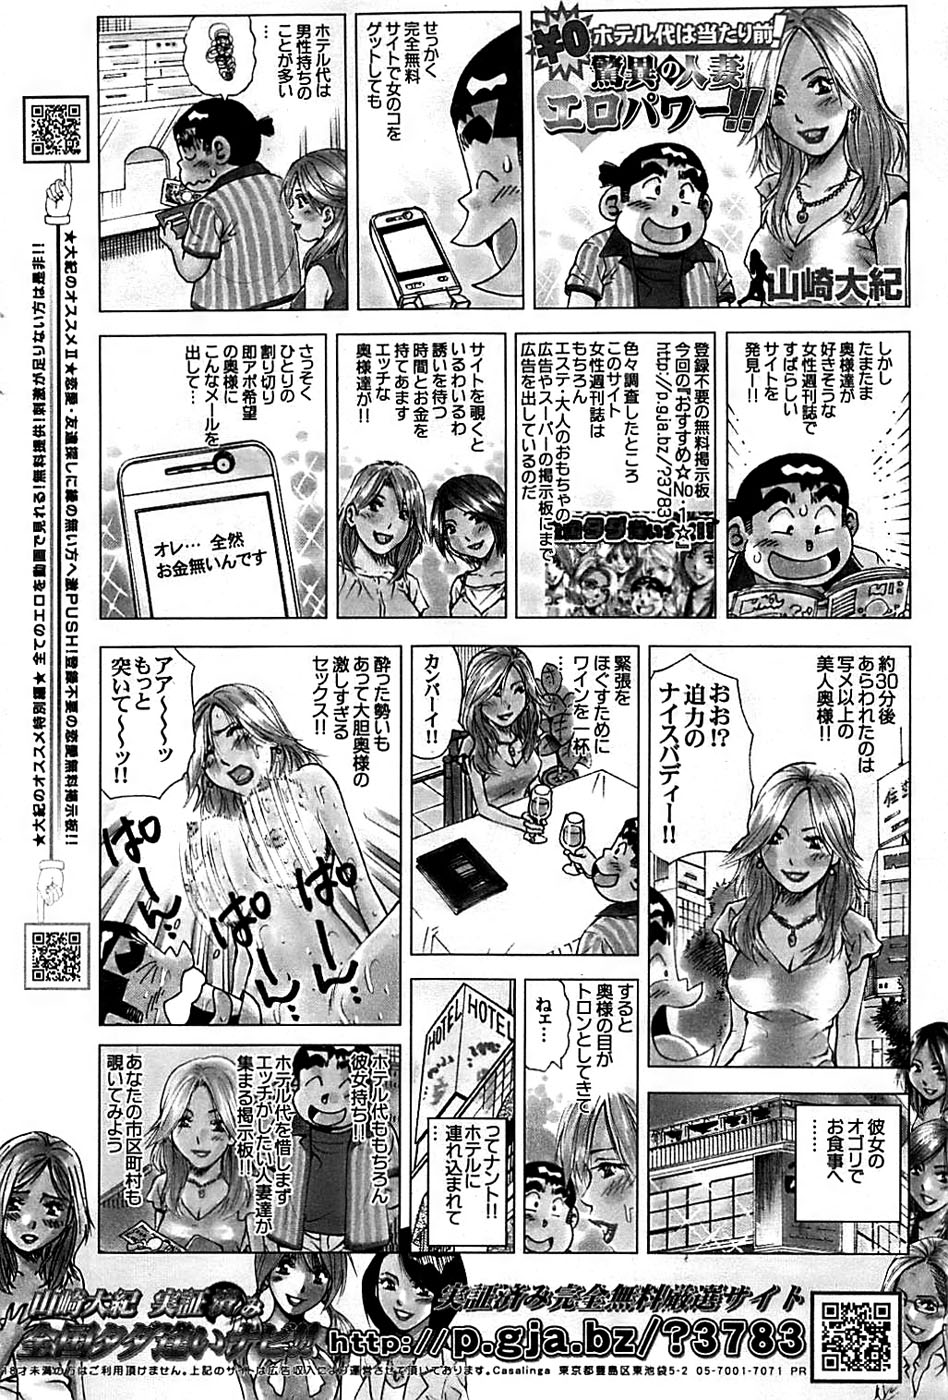 COMIC バズーカディープ 2008年01月号 Vol.4